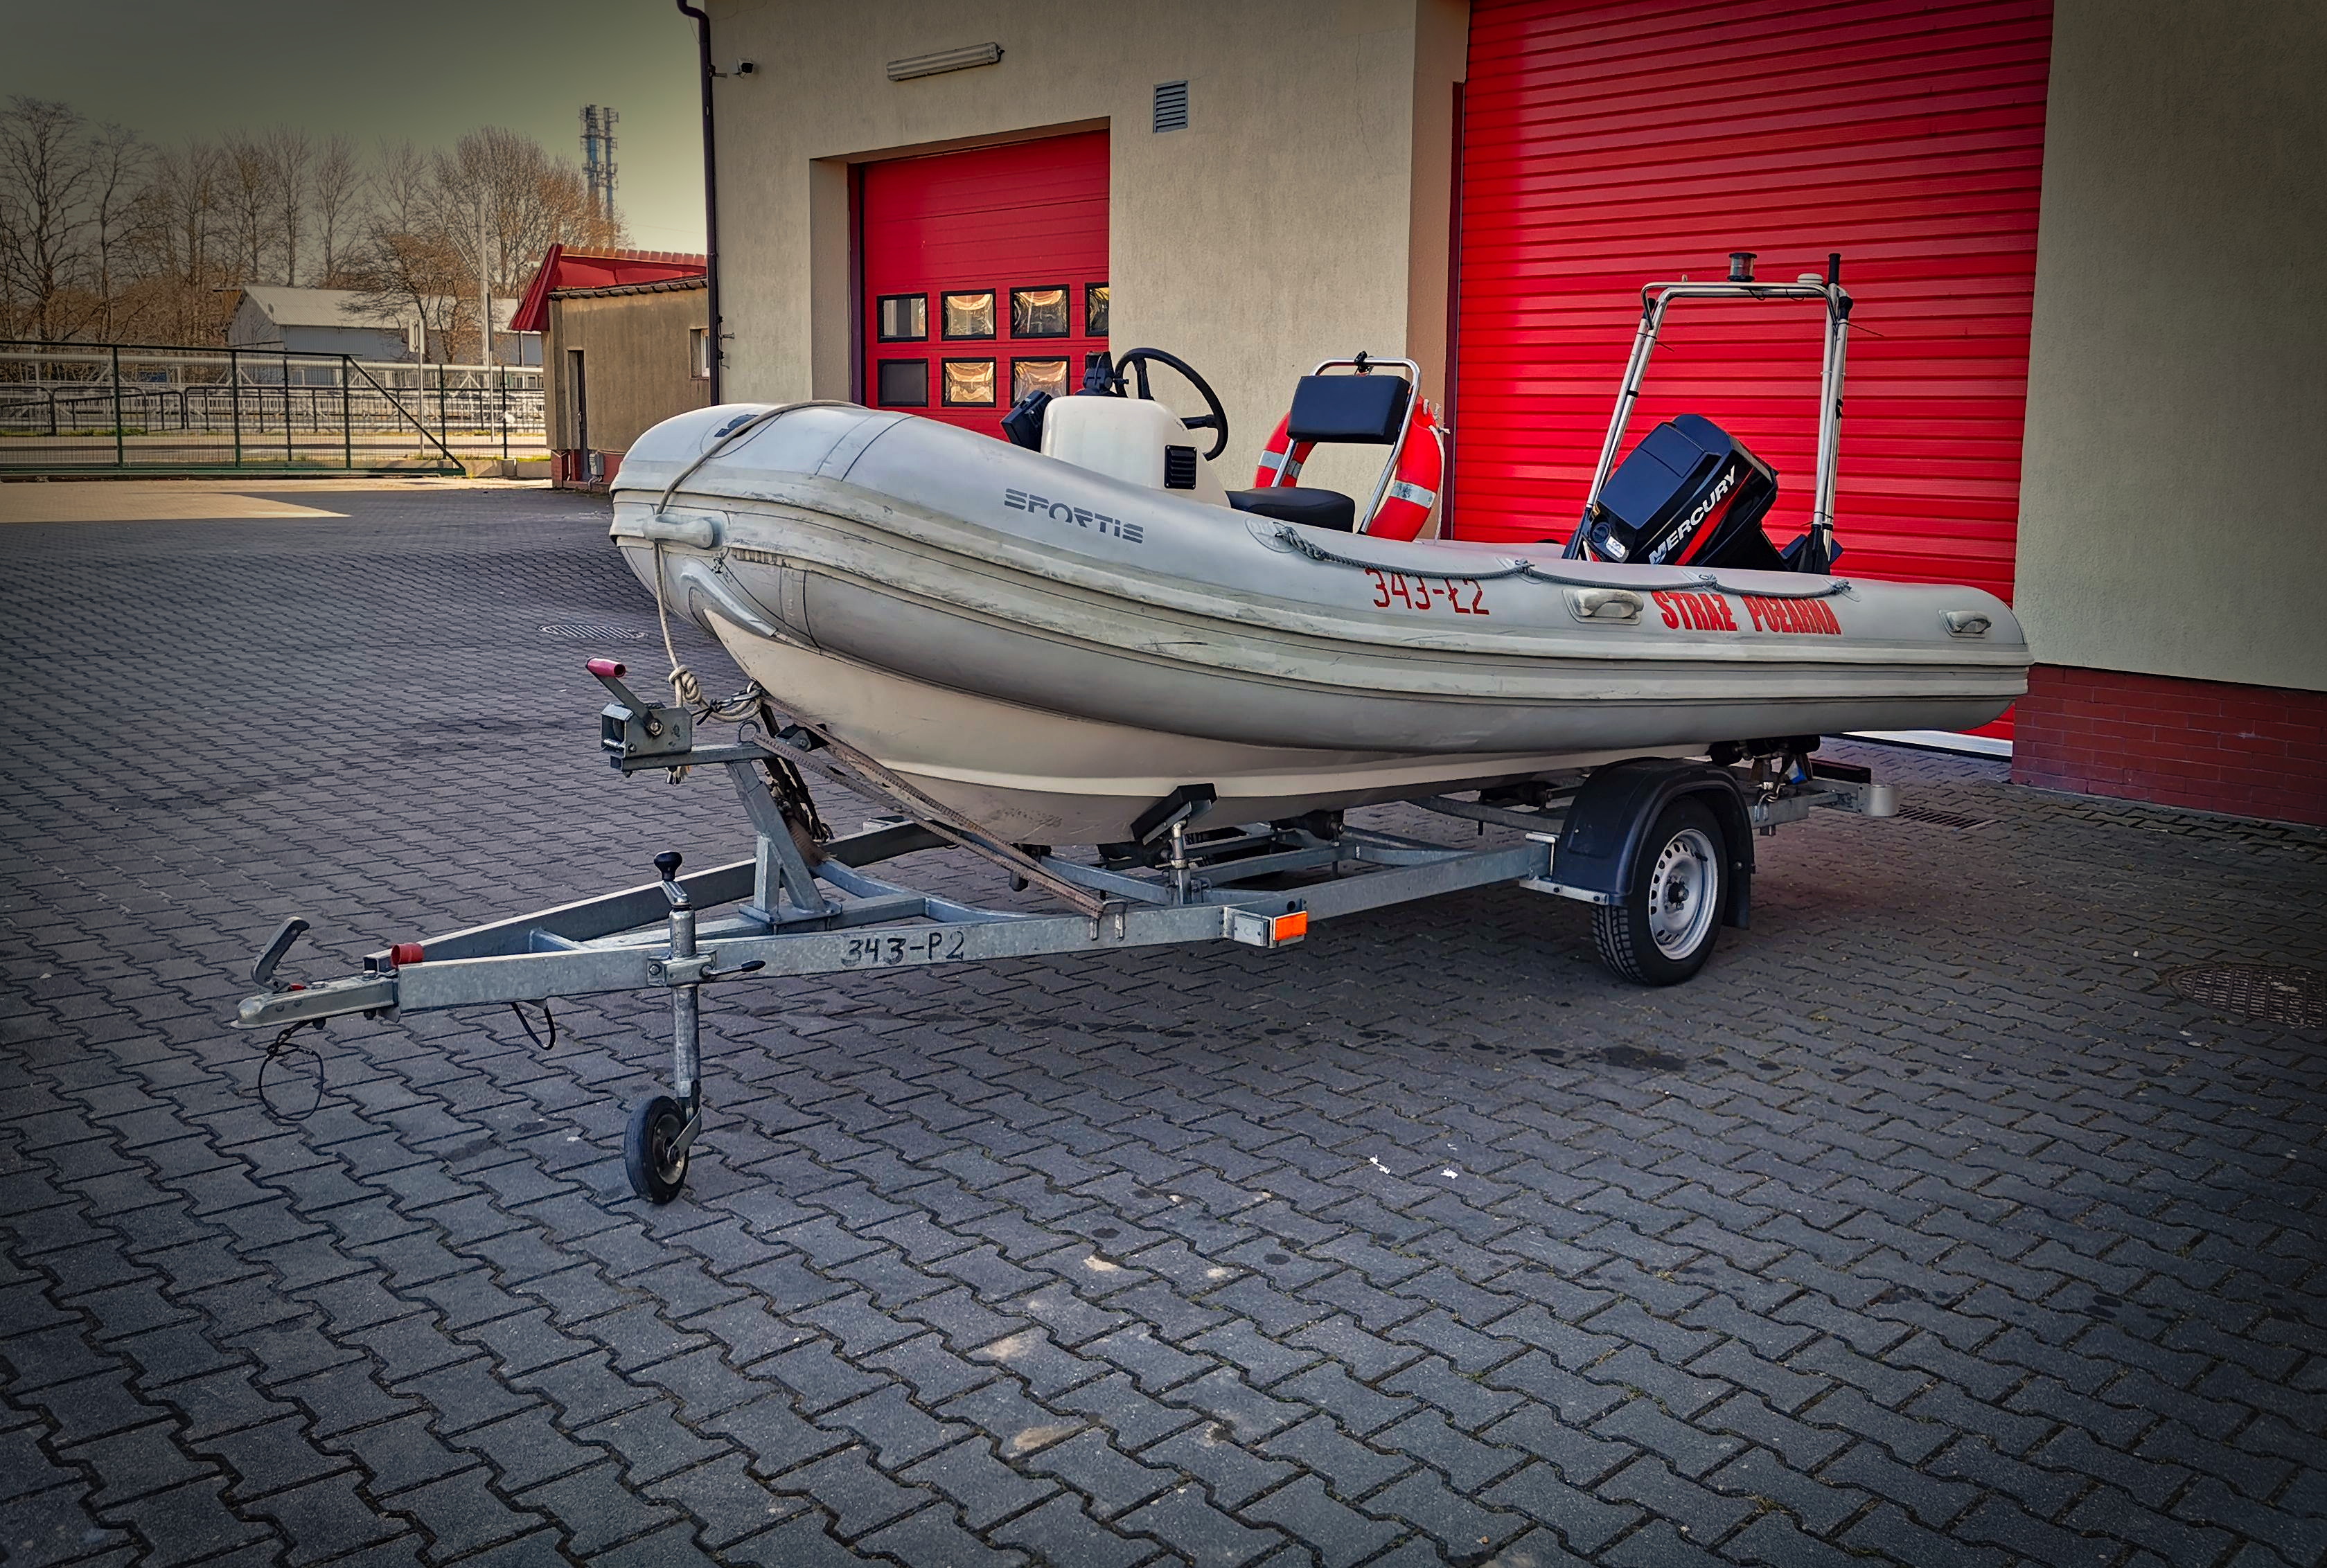 Ł2 łódź hybrydowa Sportis seria R.I.B. Clasic MC-4700, Silnik 45kW napęd śrubowy, 6 osób. Na przyczepce P2.